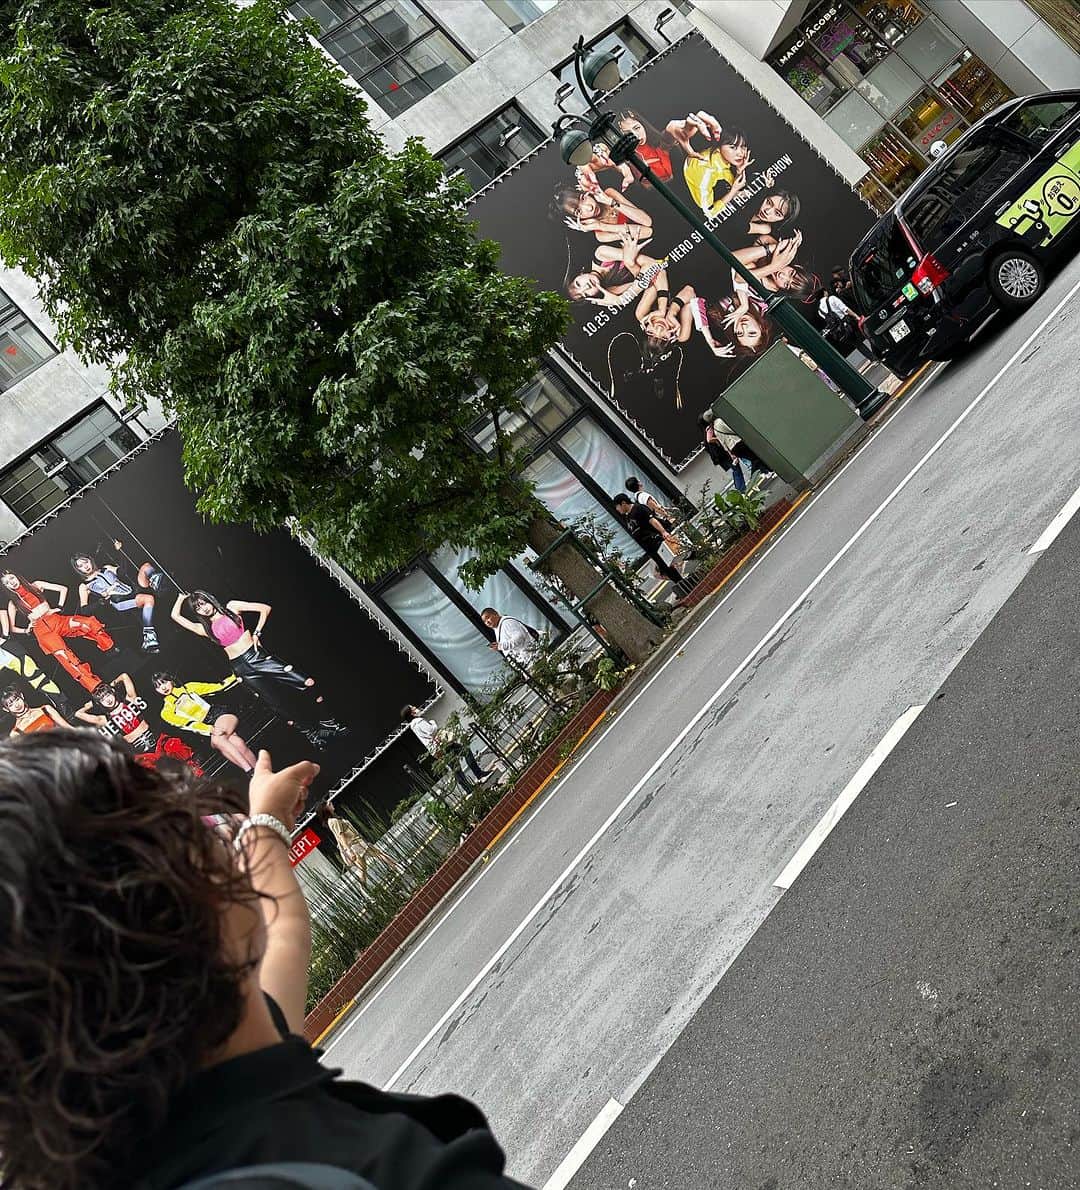 佐野俊輔のインスタグラム：「ウチの小さい頃からがんばってきた、櫛谷野々花がななんと！！  📖雑誌ローリングストーン 9/25発売 😆「GIRLS HERO」が渋谷をジャック  #渋谷TSUTAYA 1Fエリア #渋谷PARCO横  に巨大看板が😉  櫛谷野々花が大きくカッコよく載って居ます！！！  是非、渋谷でパチリ📷してください！  #PARCO #ガルヒロ #櫛谷野々花 #GIRLSHERO」